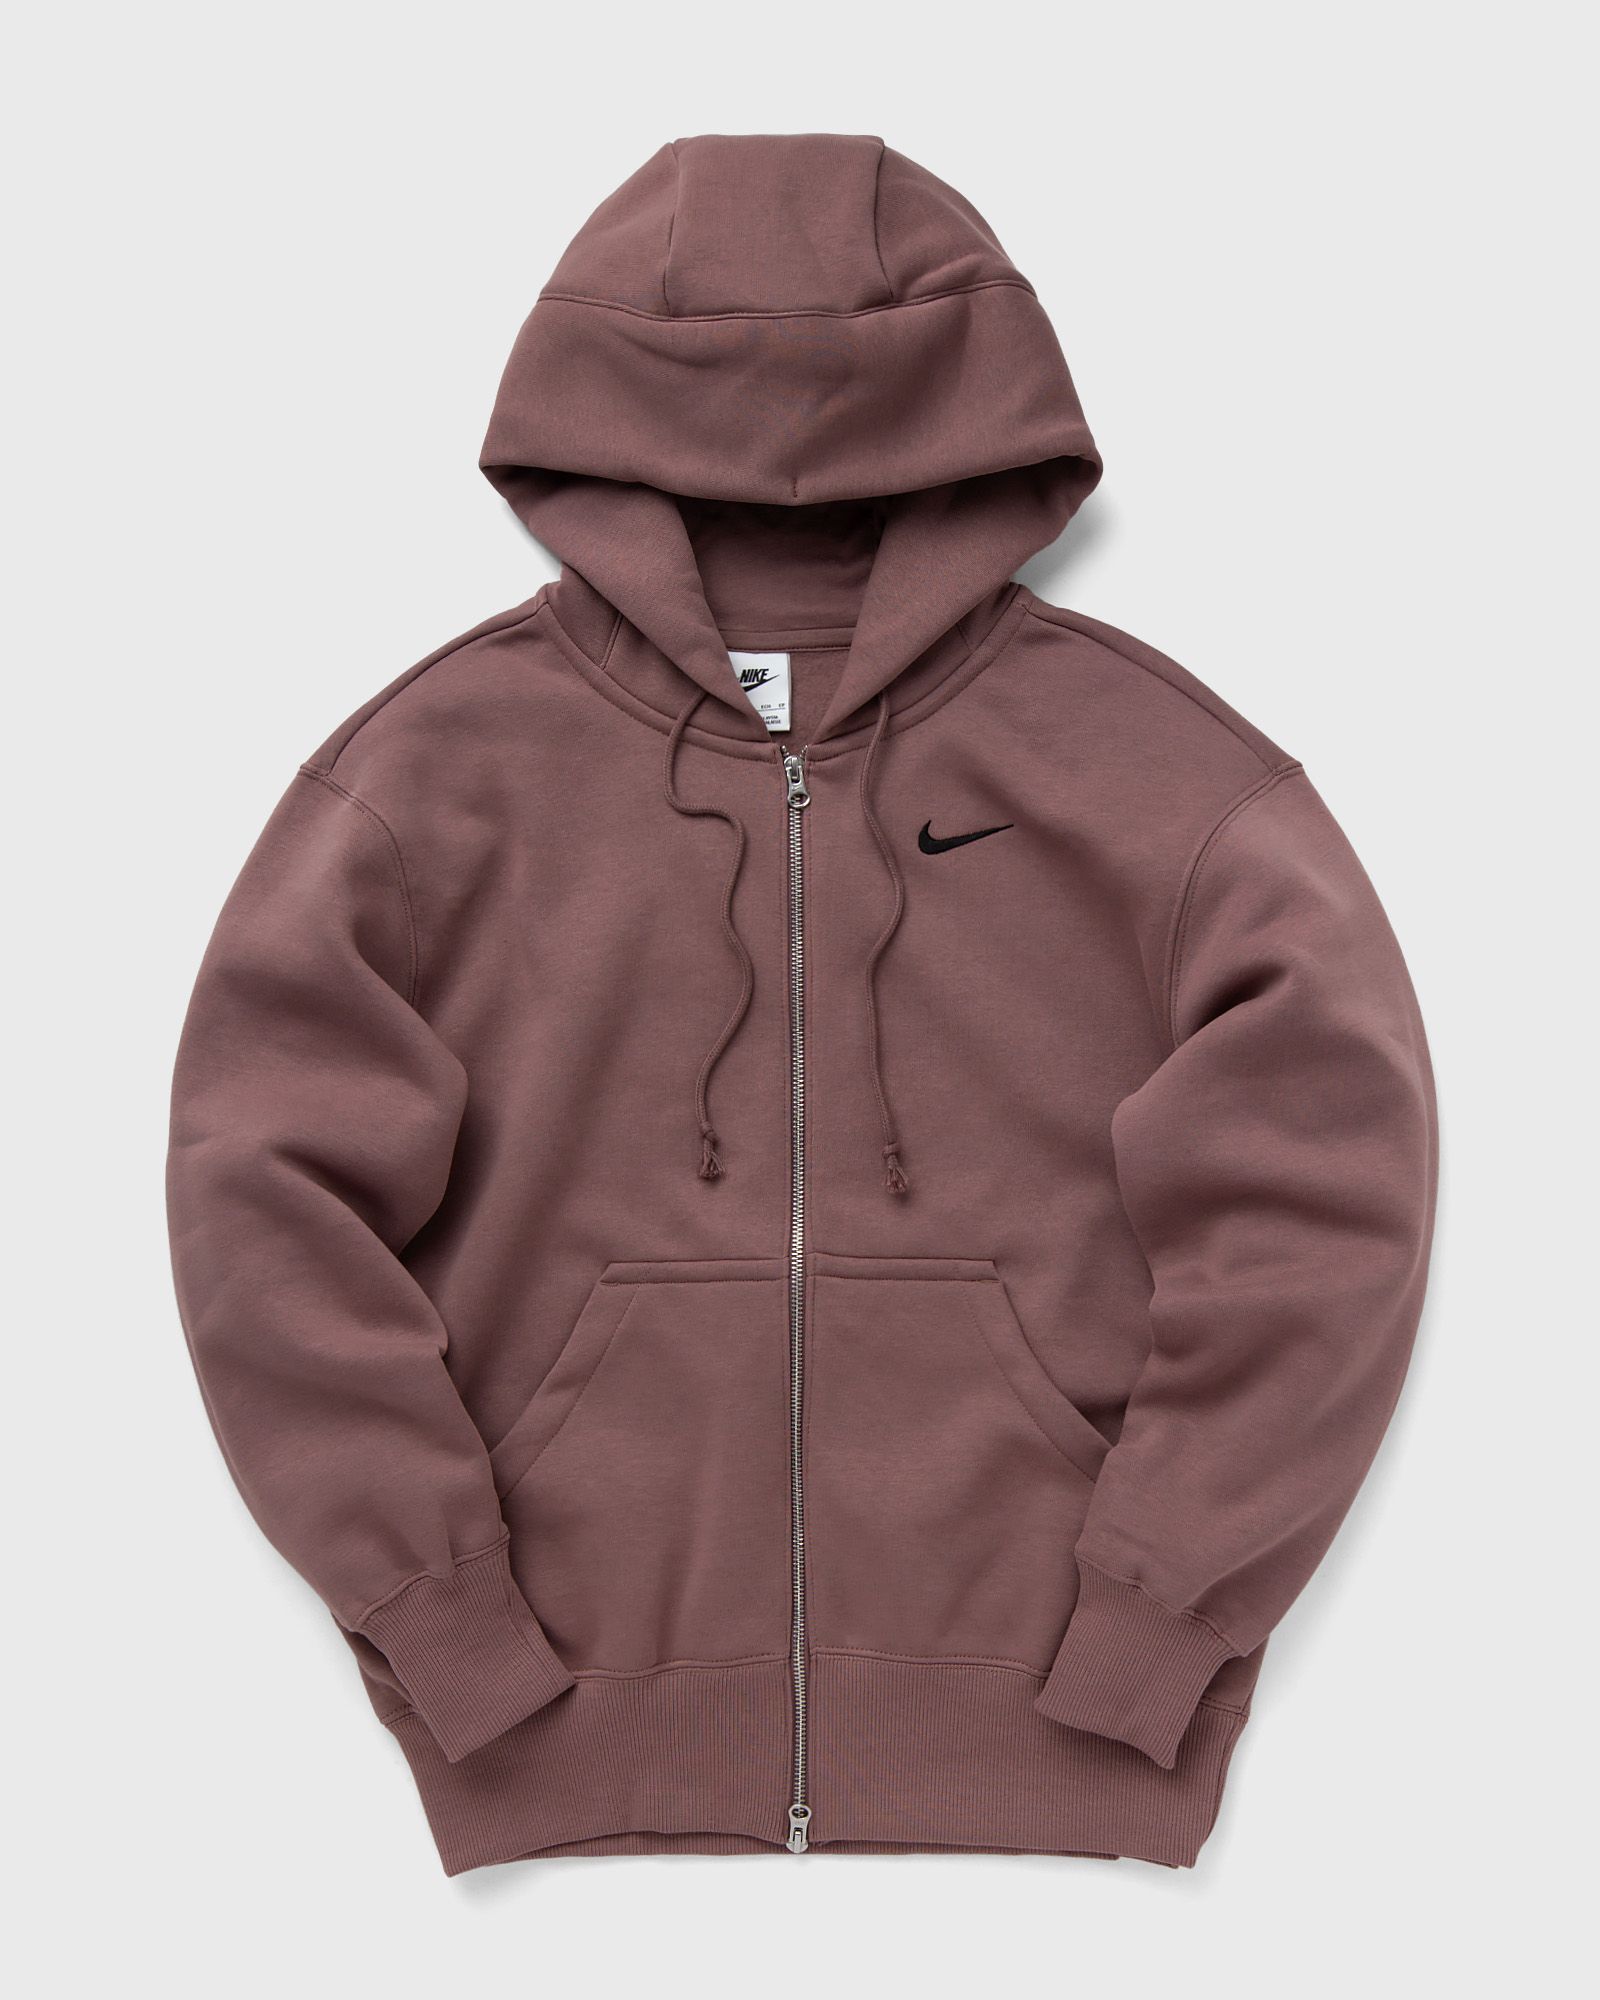 Nike - wmns phoenix fleece oversized full-zip hoodie women hoodies|zippers multi in größe:l